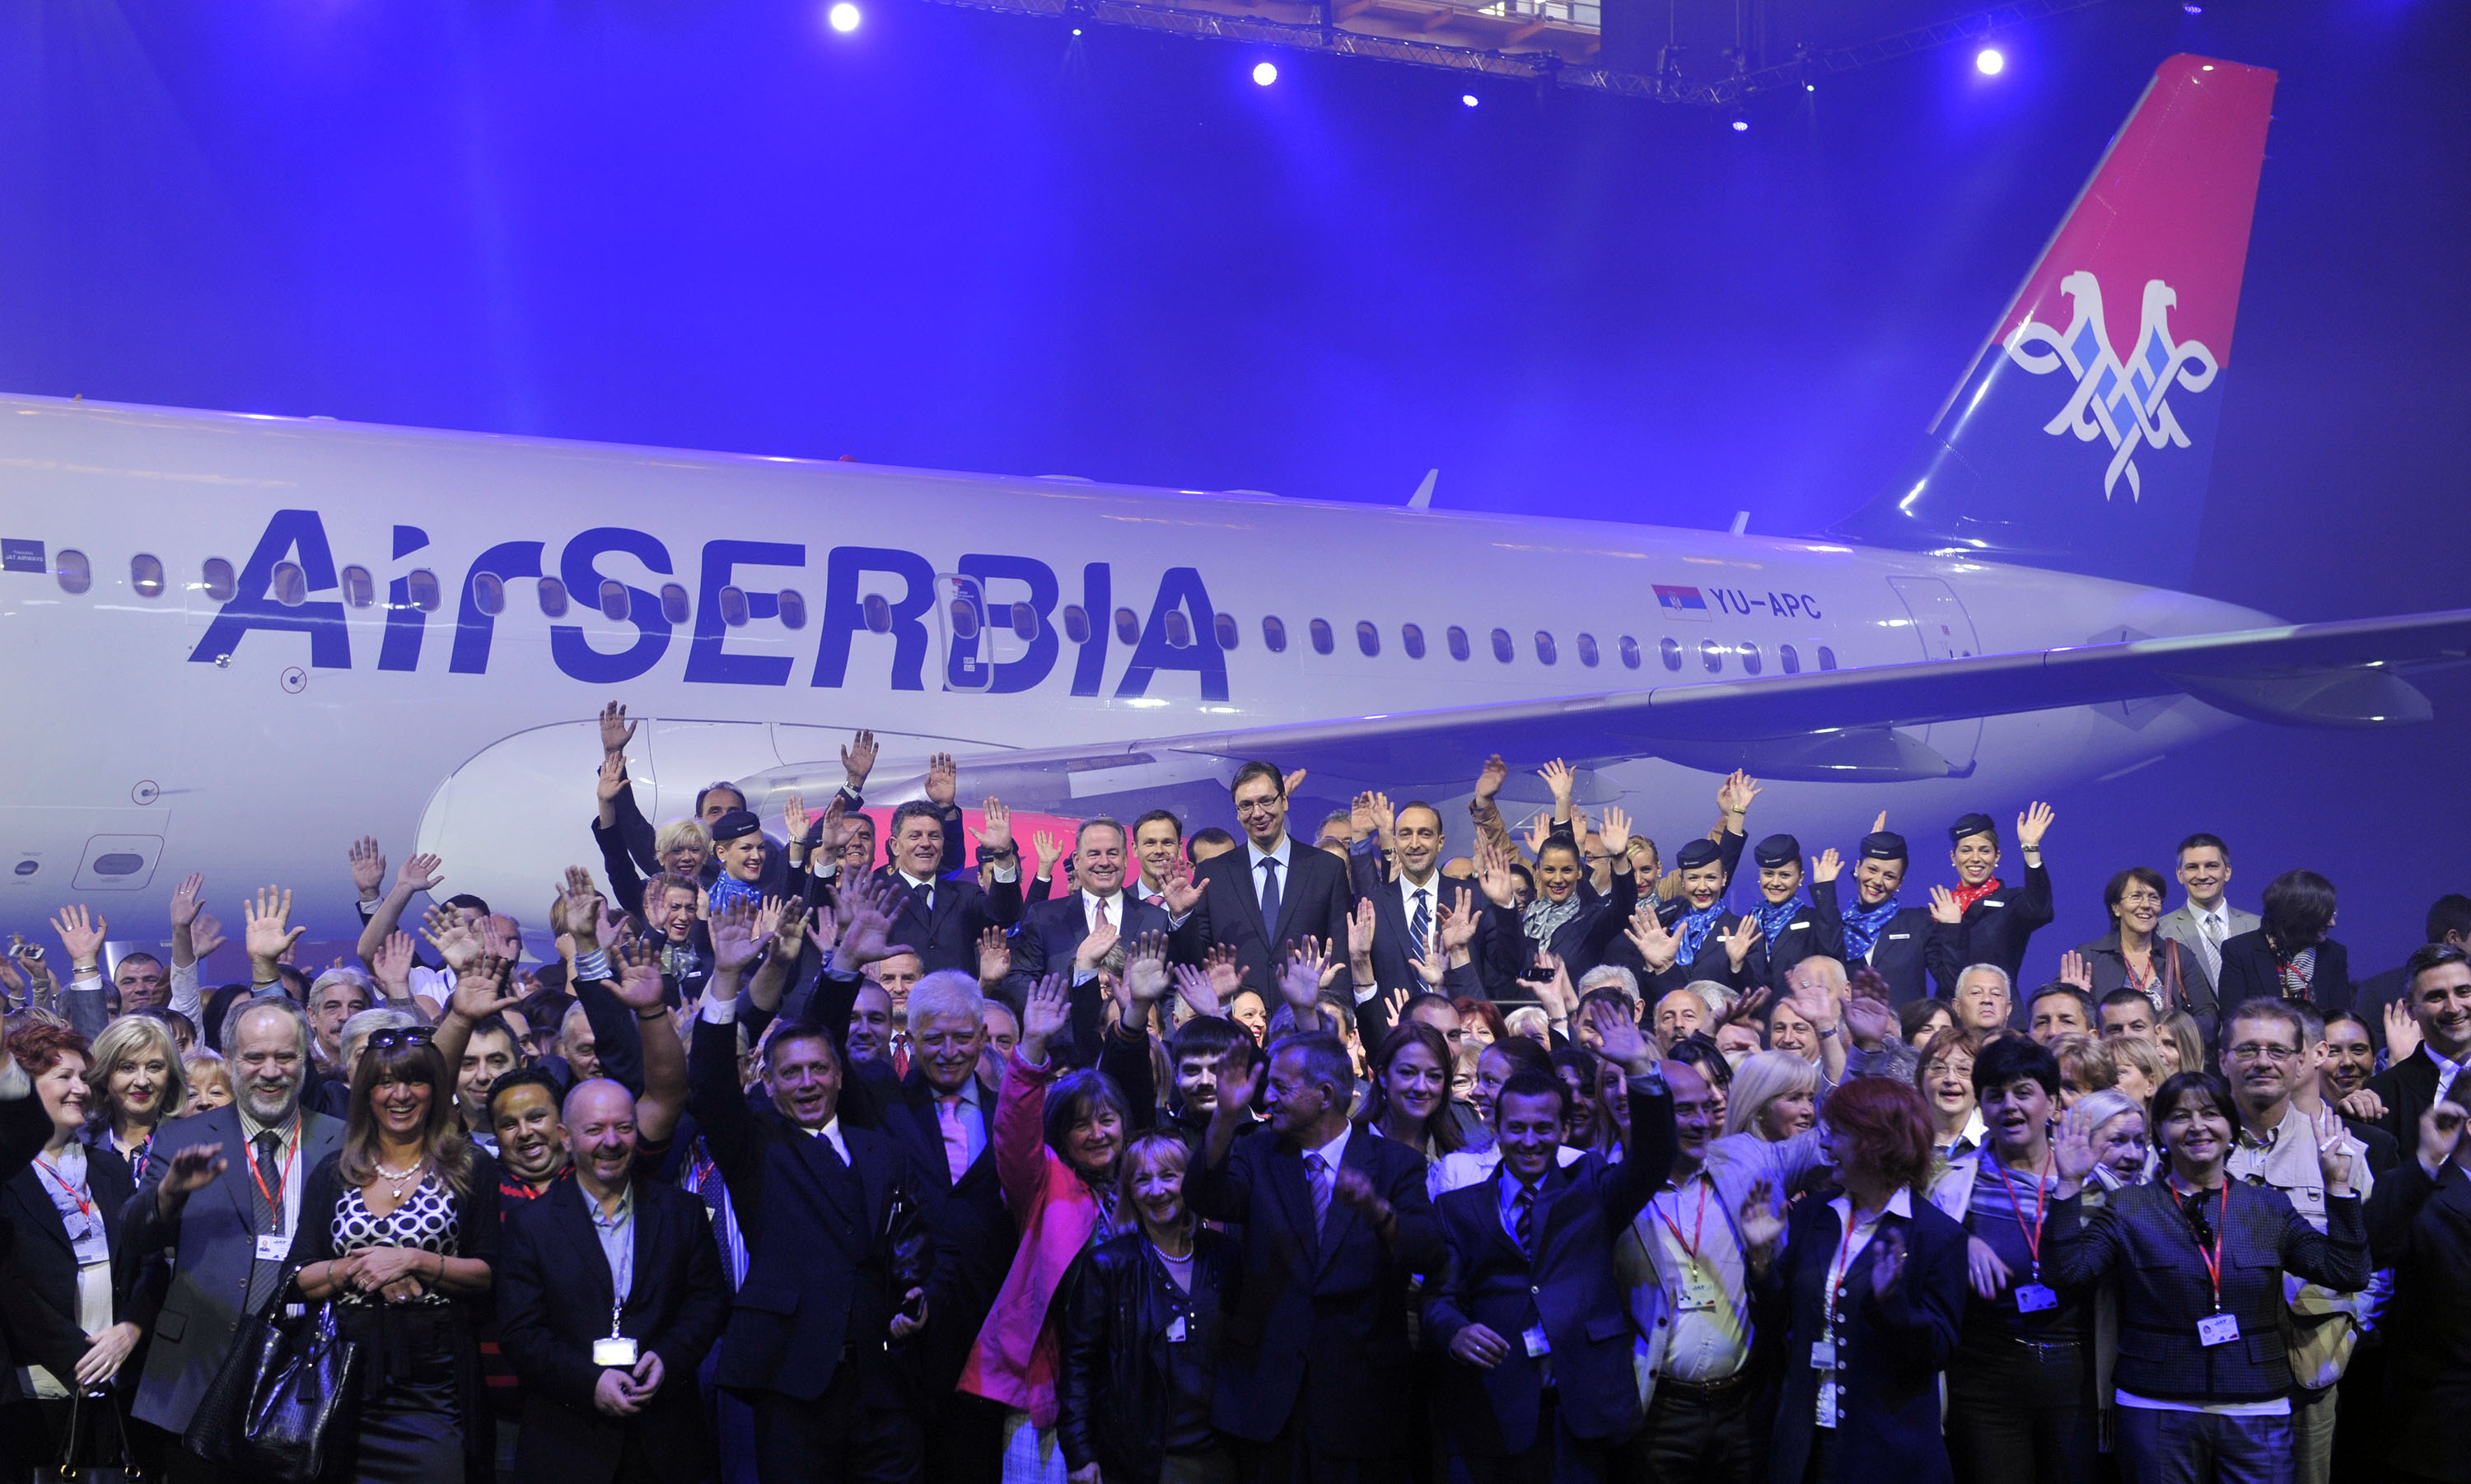 Ο κρατικός αερομεταφορέας της Σερβίας υψώνεται στον ουρανό